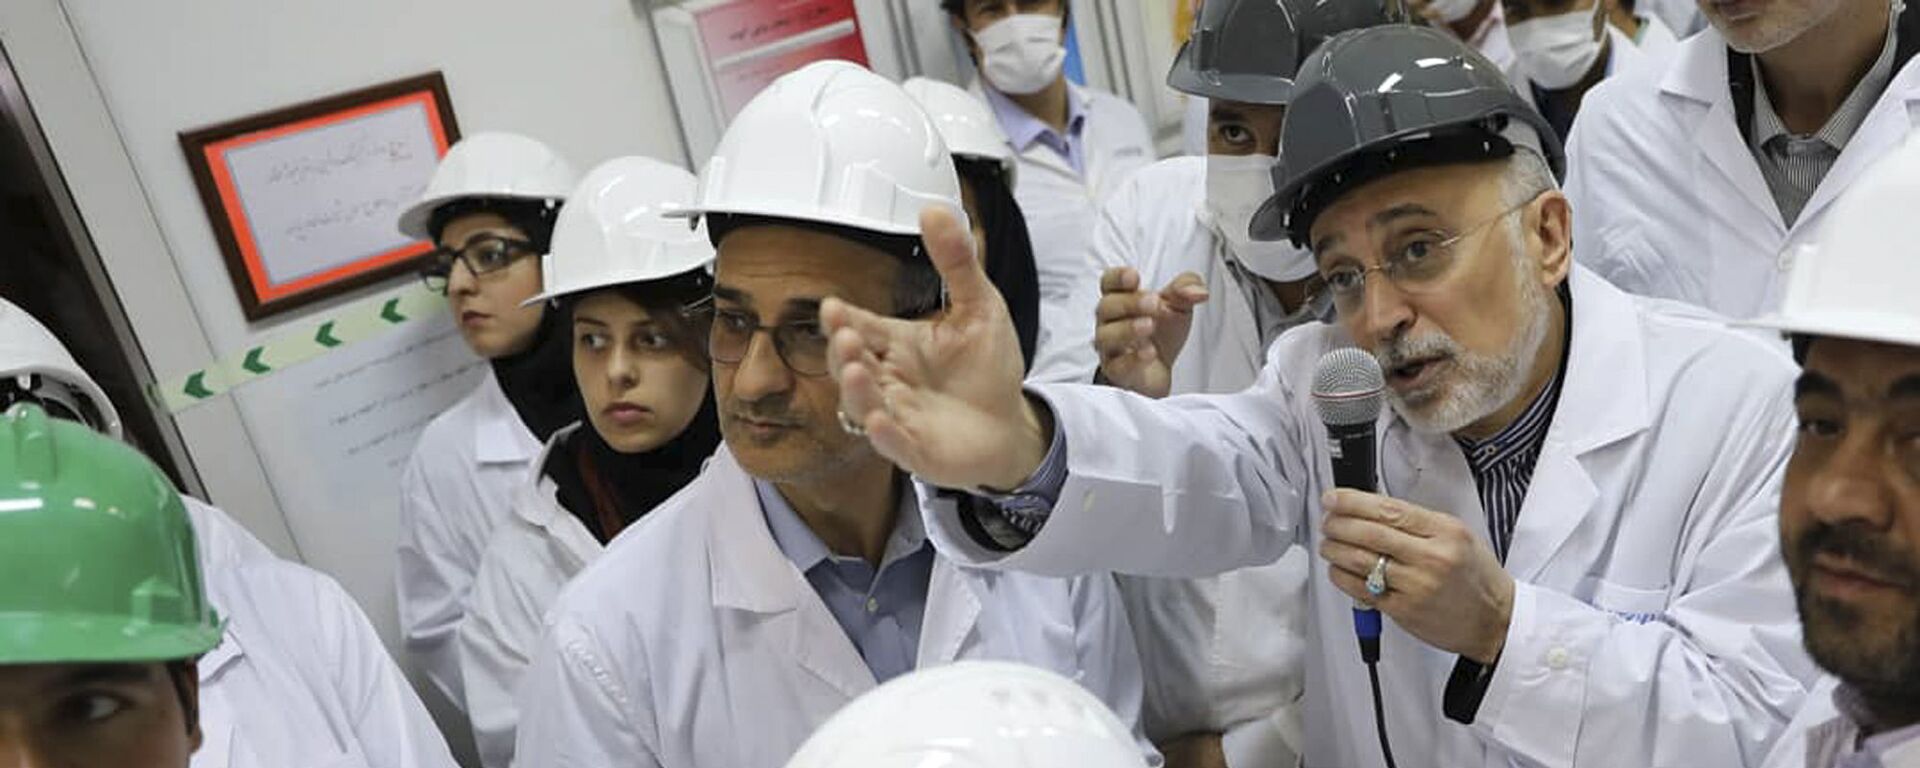 علي أكبر صالحي رئيس منظمة الطاقة النووية الإيرانية يتحدث مع وسائل الإعلام أثناء زيارته لمرفق تخصيب نطنز وسط إيران - سبوتنيك عربي, 1920, 10.04.2021